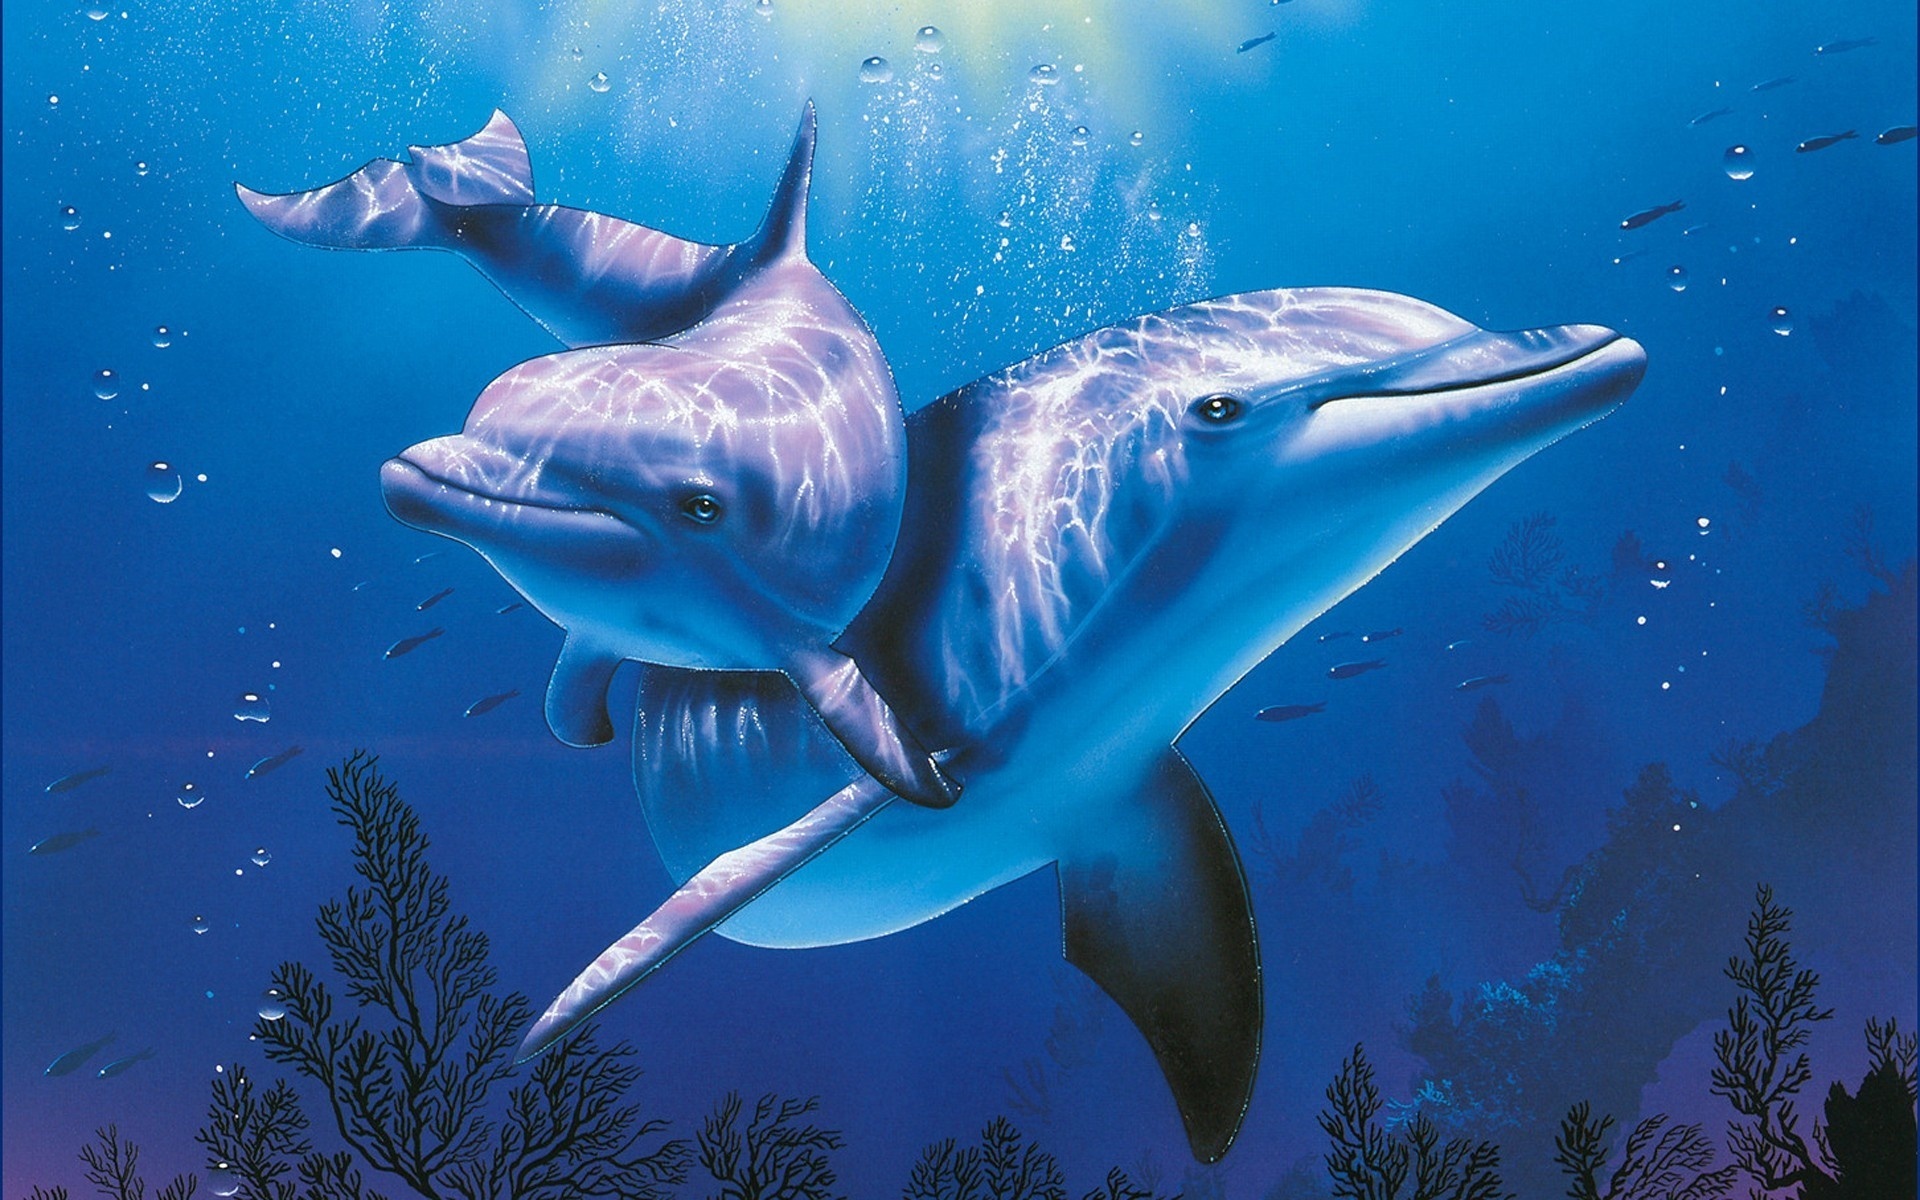 სურათის დელფინები ზღვაში